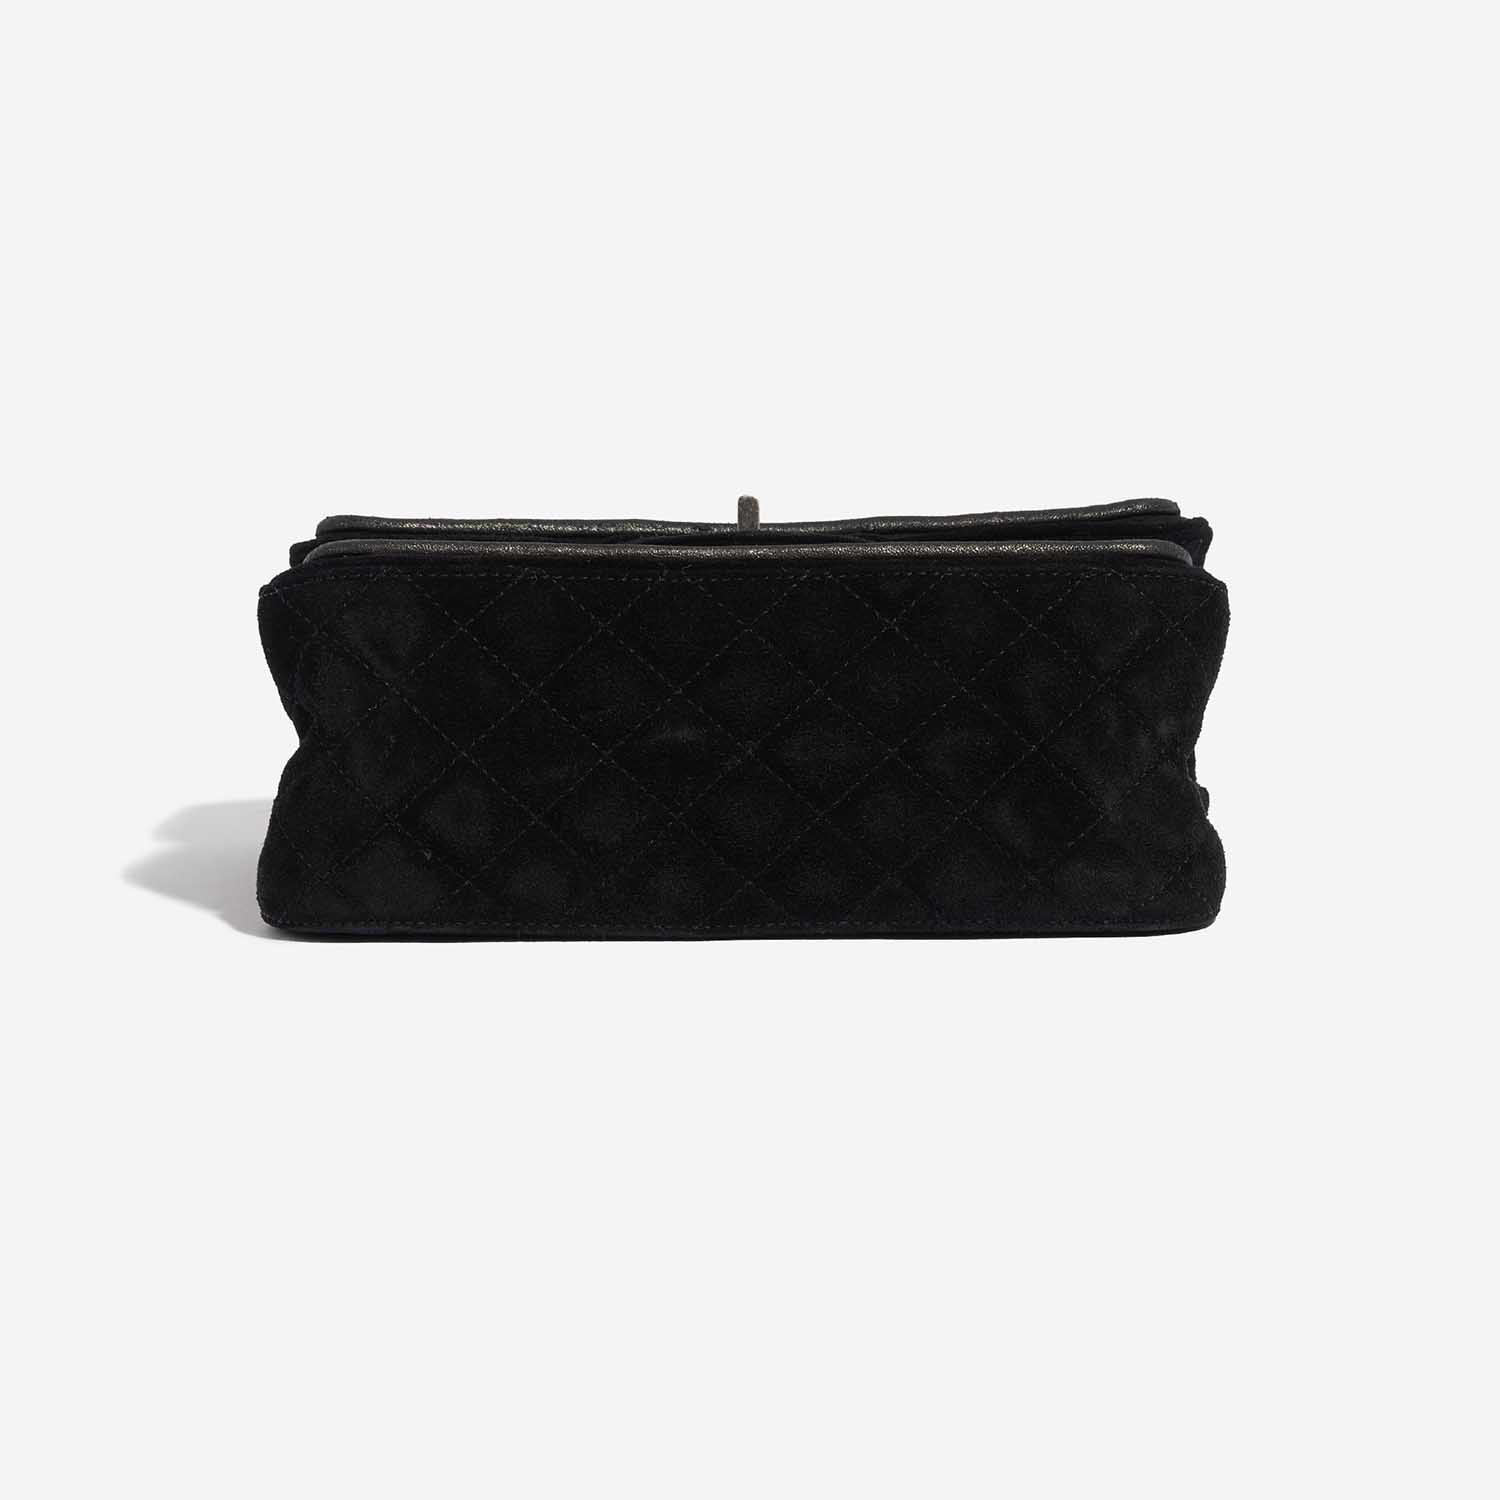 Sac Chanel d'occasion 2.55 Reissue Velvet Noir Fond Noir | Vendez votre sac de créateur sur Saclab.com